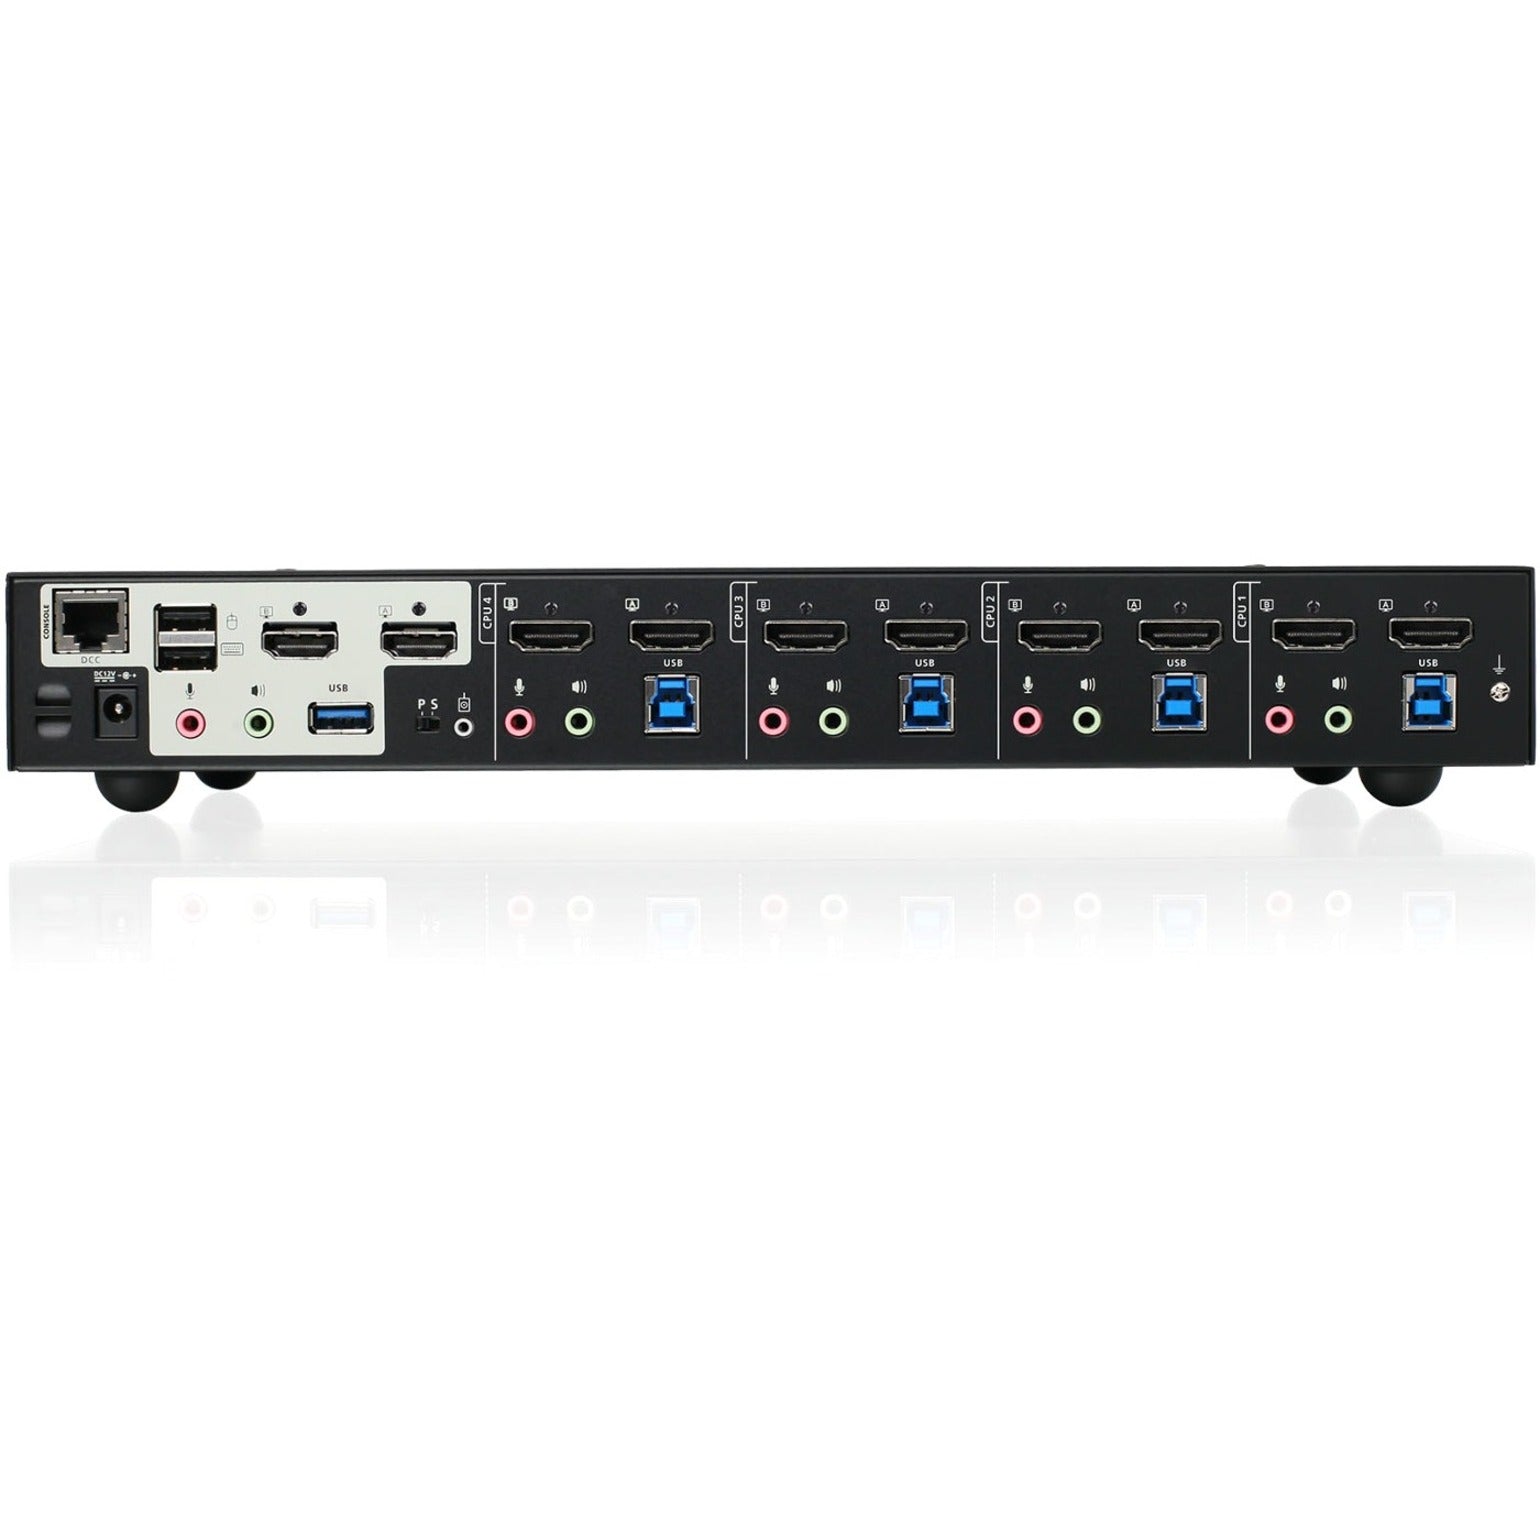 Marca: IOGEAR Interruptor KVMP de 4 puertos y 4K de doble vista con HDMI concentrador USB 3.0 y audio - Cumple con TAA